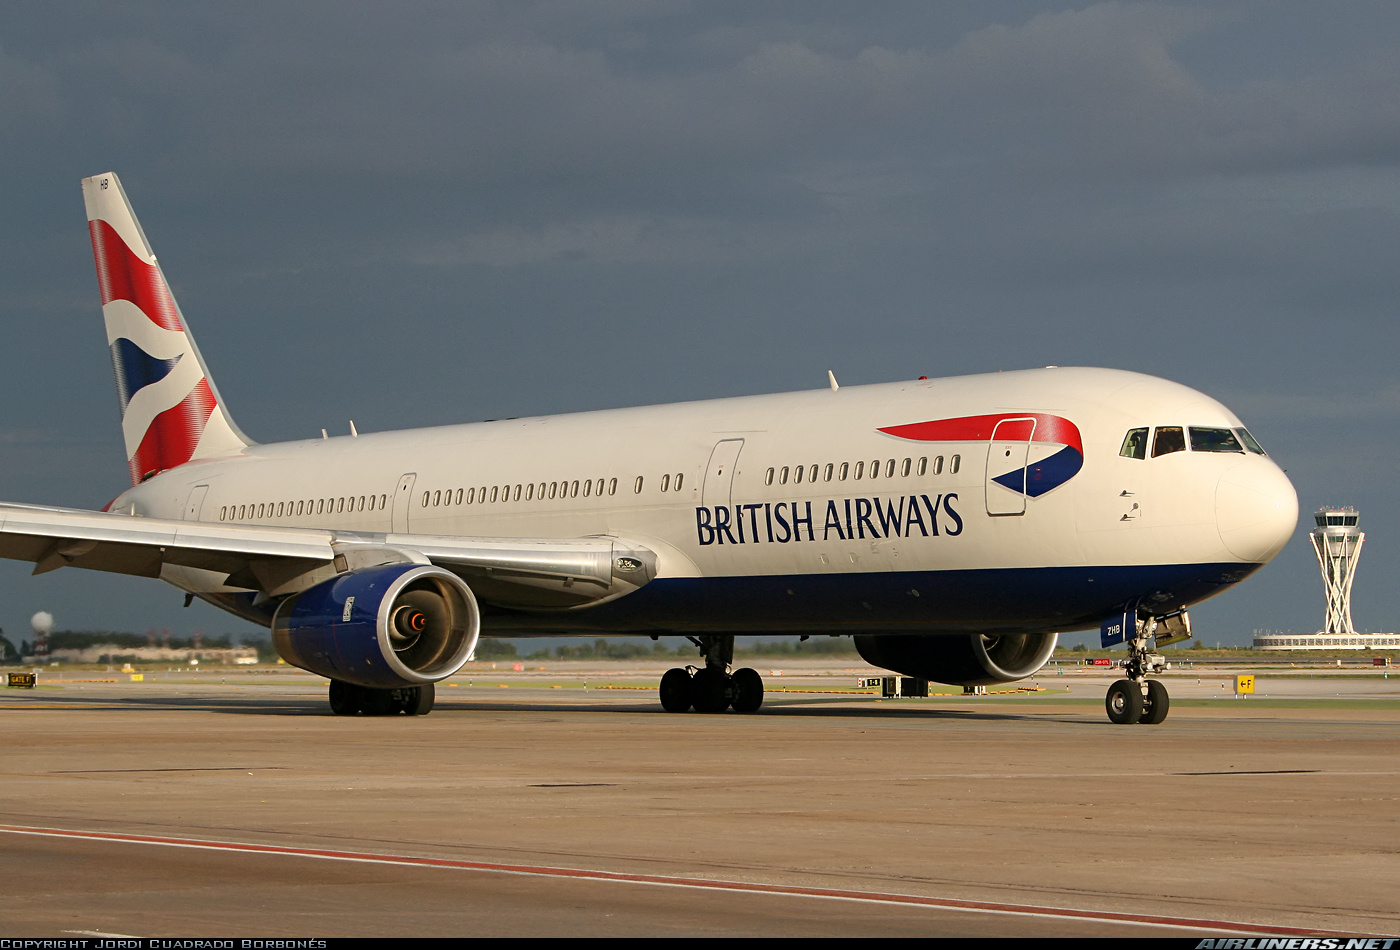 Boeing 767-336/ER - British Airways | Aviation Photo #1127894 ...